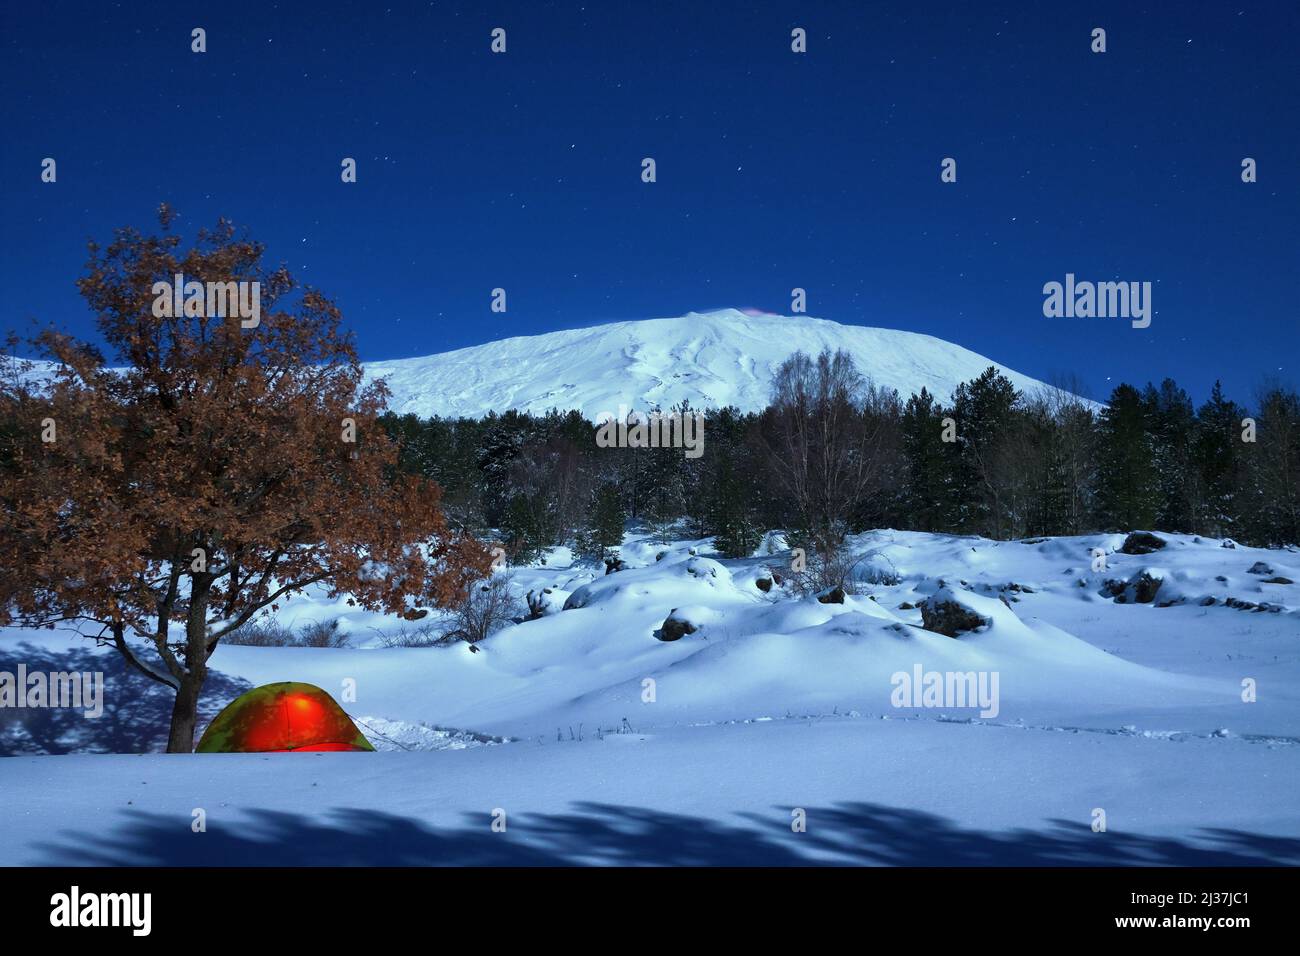 Tenda illuminata e paesaggio invernale del Parco dell'Etna al chiaro di luna, Sicilia Foto Stock